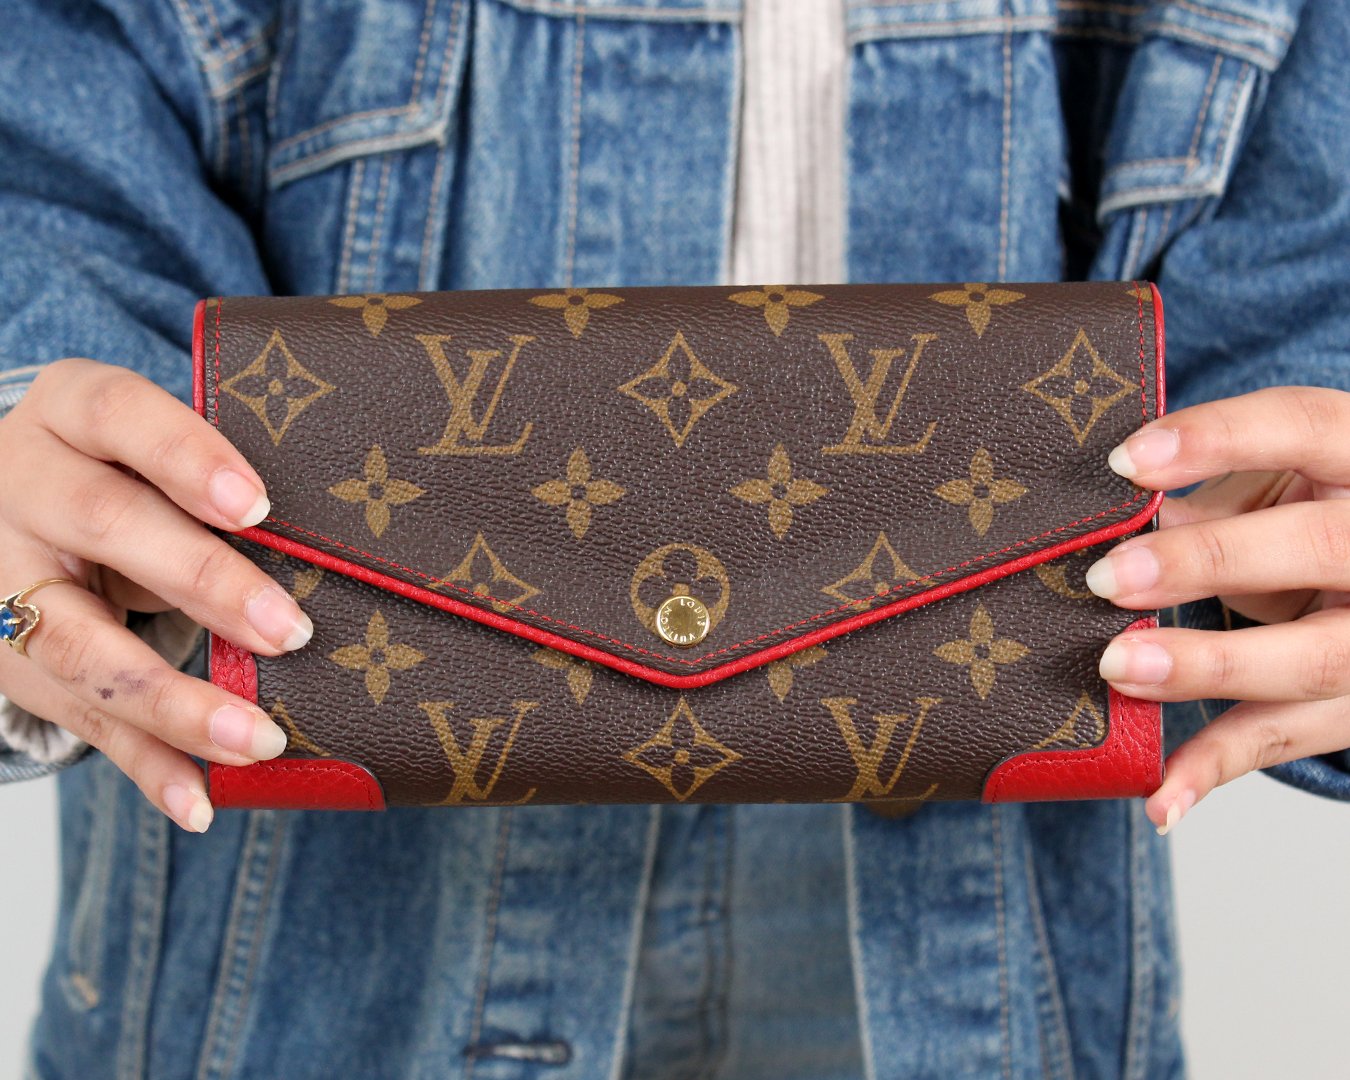 Louis Vuitton Black Monogram Empreinte Victorine Wallet, myGemma